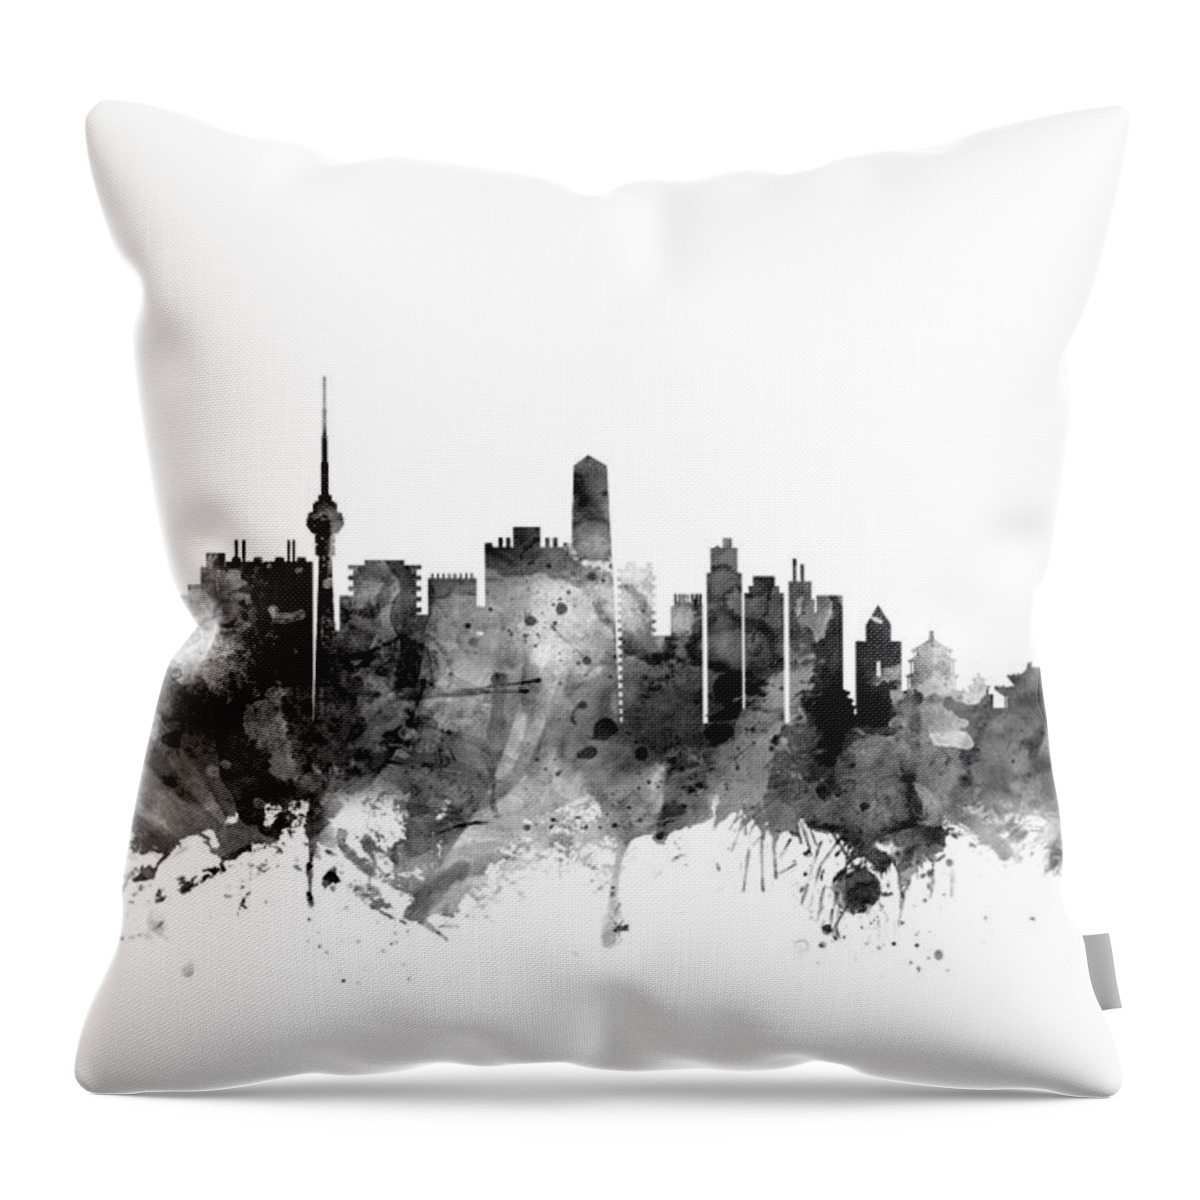 Beijing Throw Pillow featuring the digital art Beijing China Skyline by Michael Tompsett